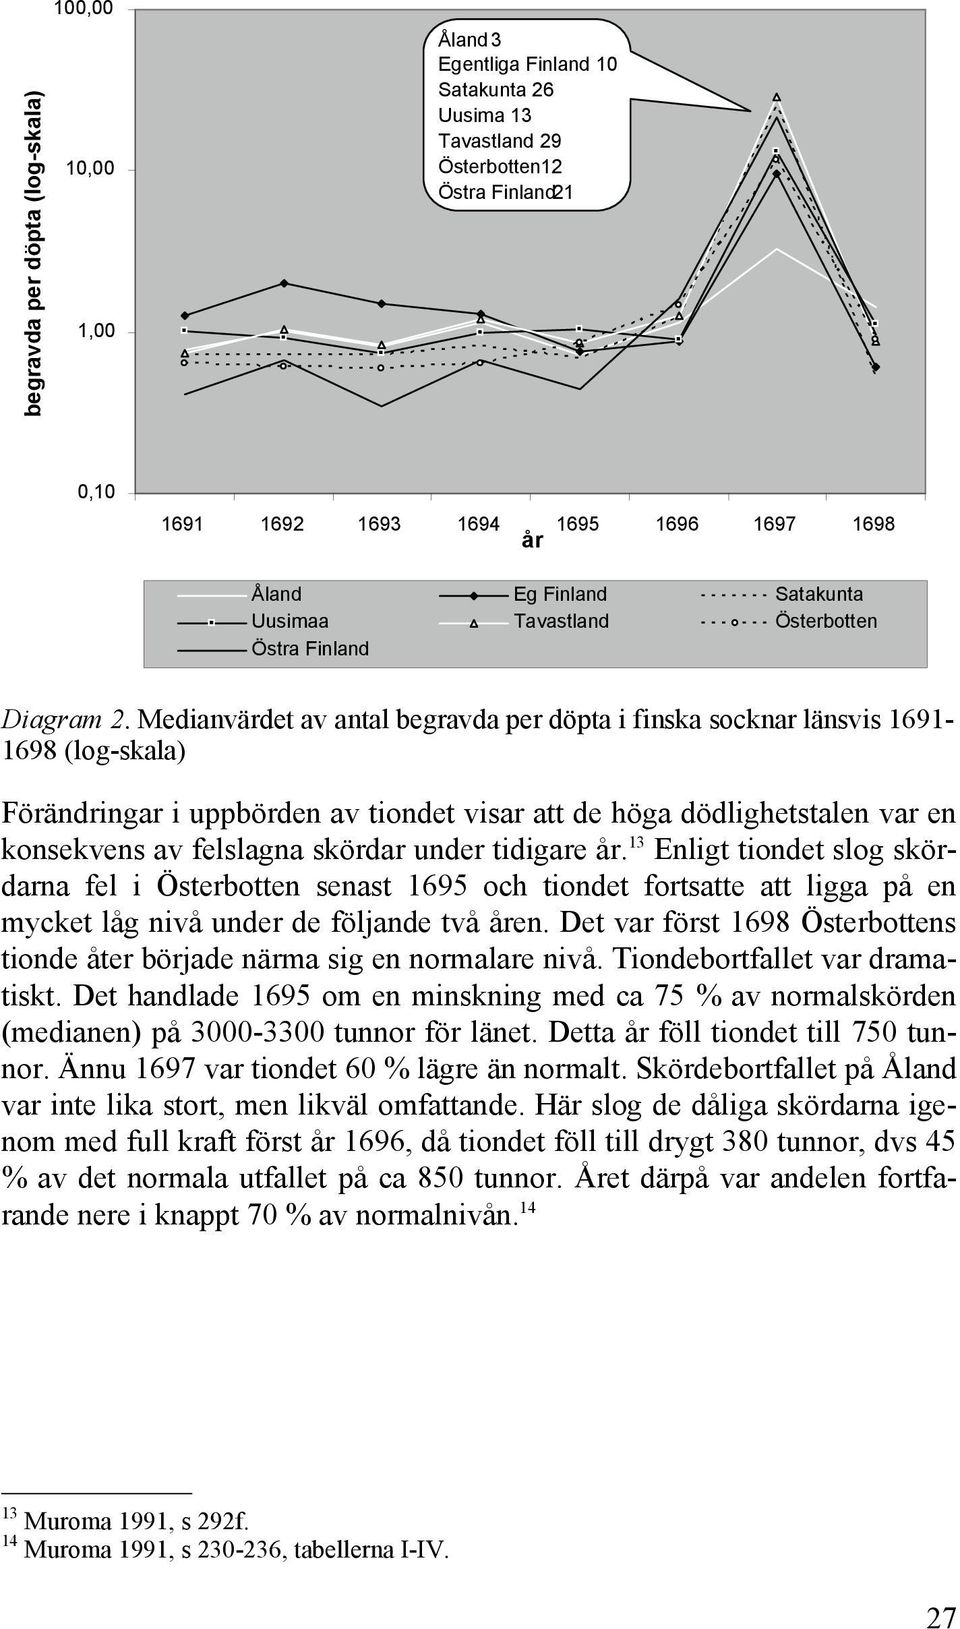 Medianvärdet av antal begravda per döpta i finska socknar länsvis 1691-1698 (log-skala) Förändringar i uppbörden av tiondet visar att de höga dödlighetstalen var en konsekvens av felslagna skördar